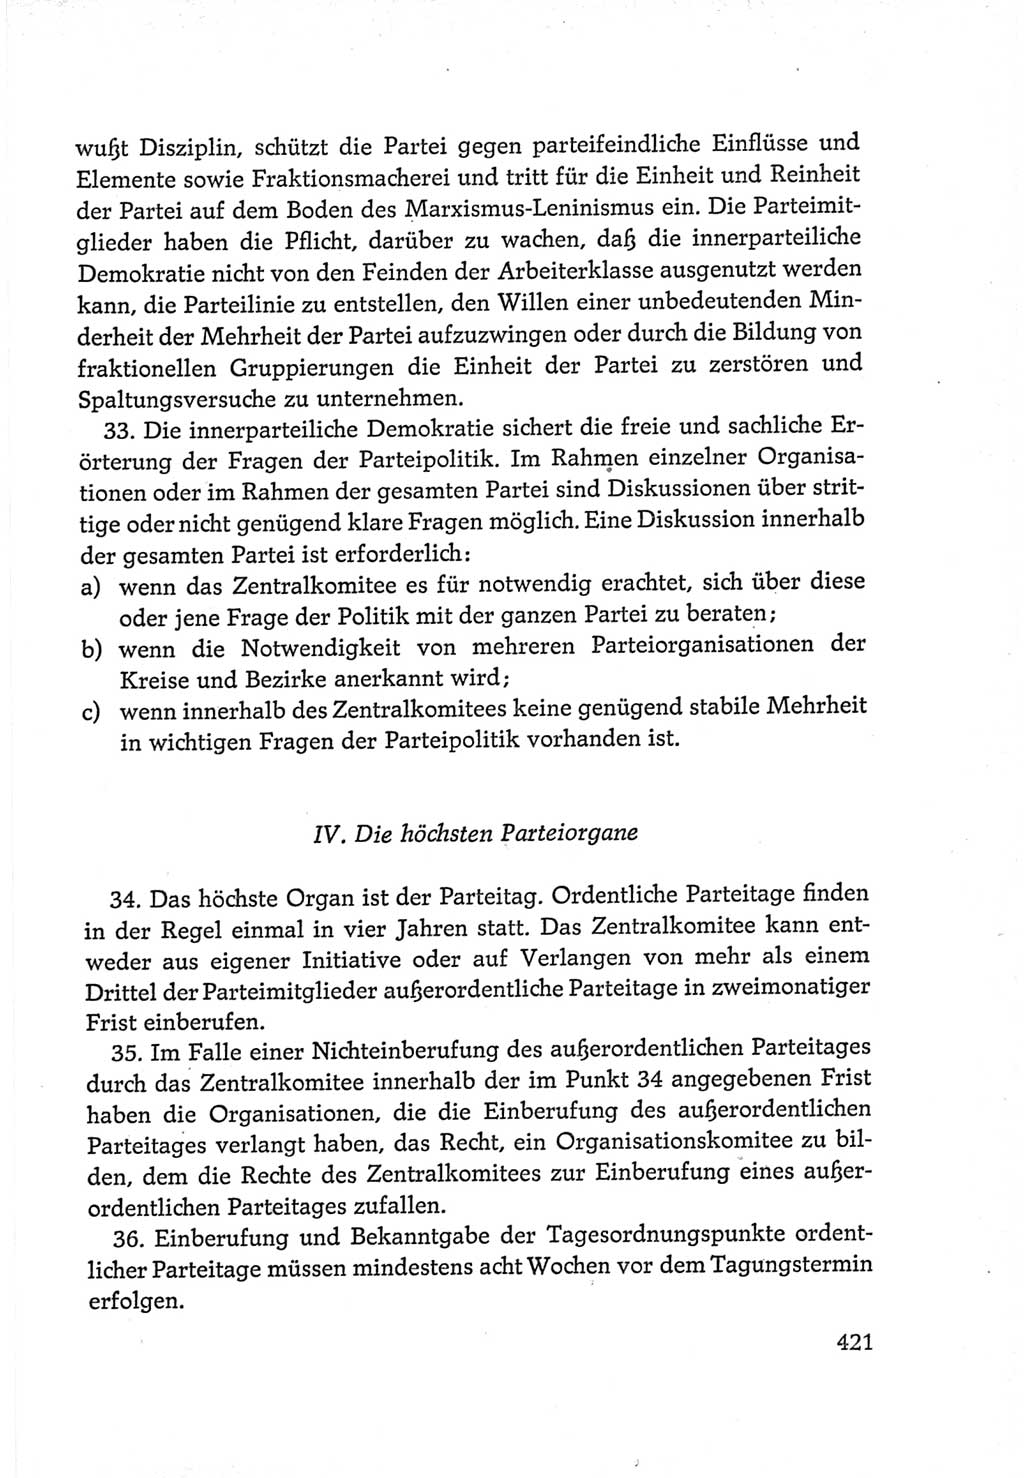 Protokoll der Verhandlungen des Ⅵ. Parteitages der Sozialistischen Einheitspartei Deutschlands (SED) [Deutsche Demokratische Republik (DDR)] 1963, Band Ⅳ, Seite 421 (Prot. Verh. Ⅵ. PT SED DDR 1963, Bd. Ⅳ, S. 421)